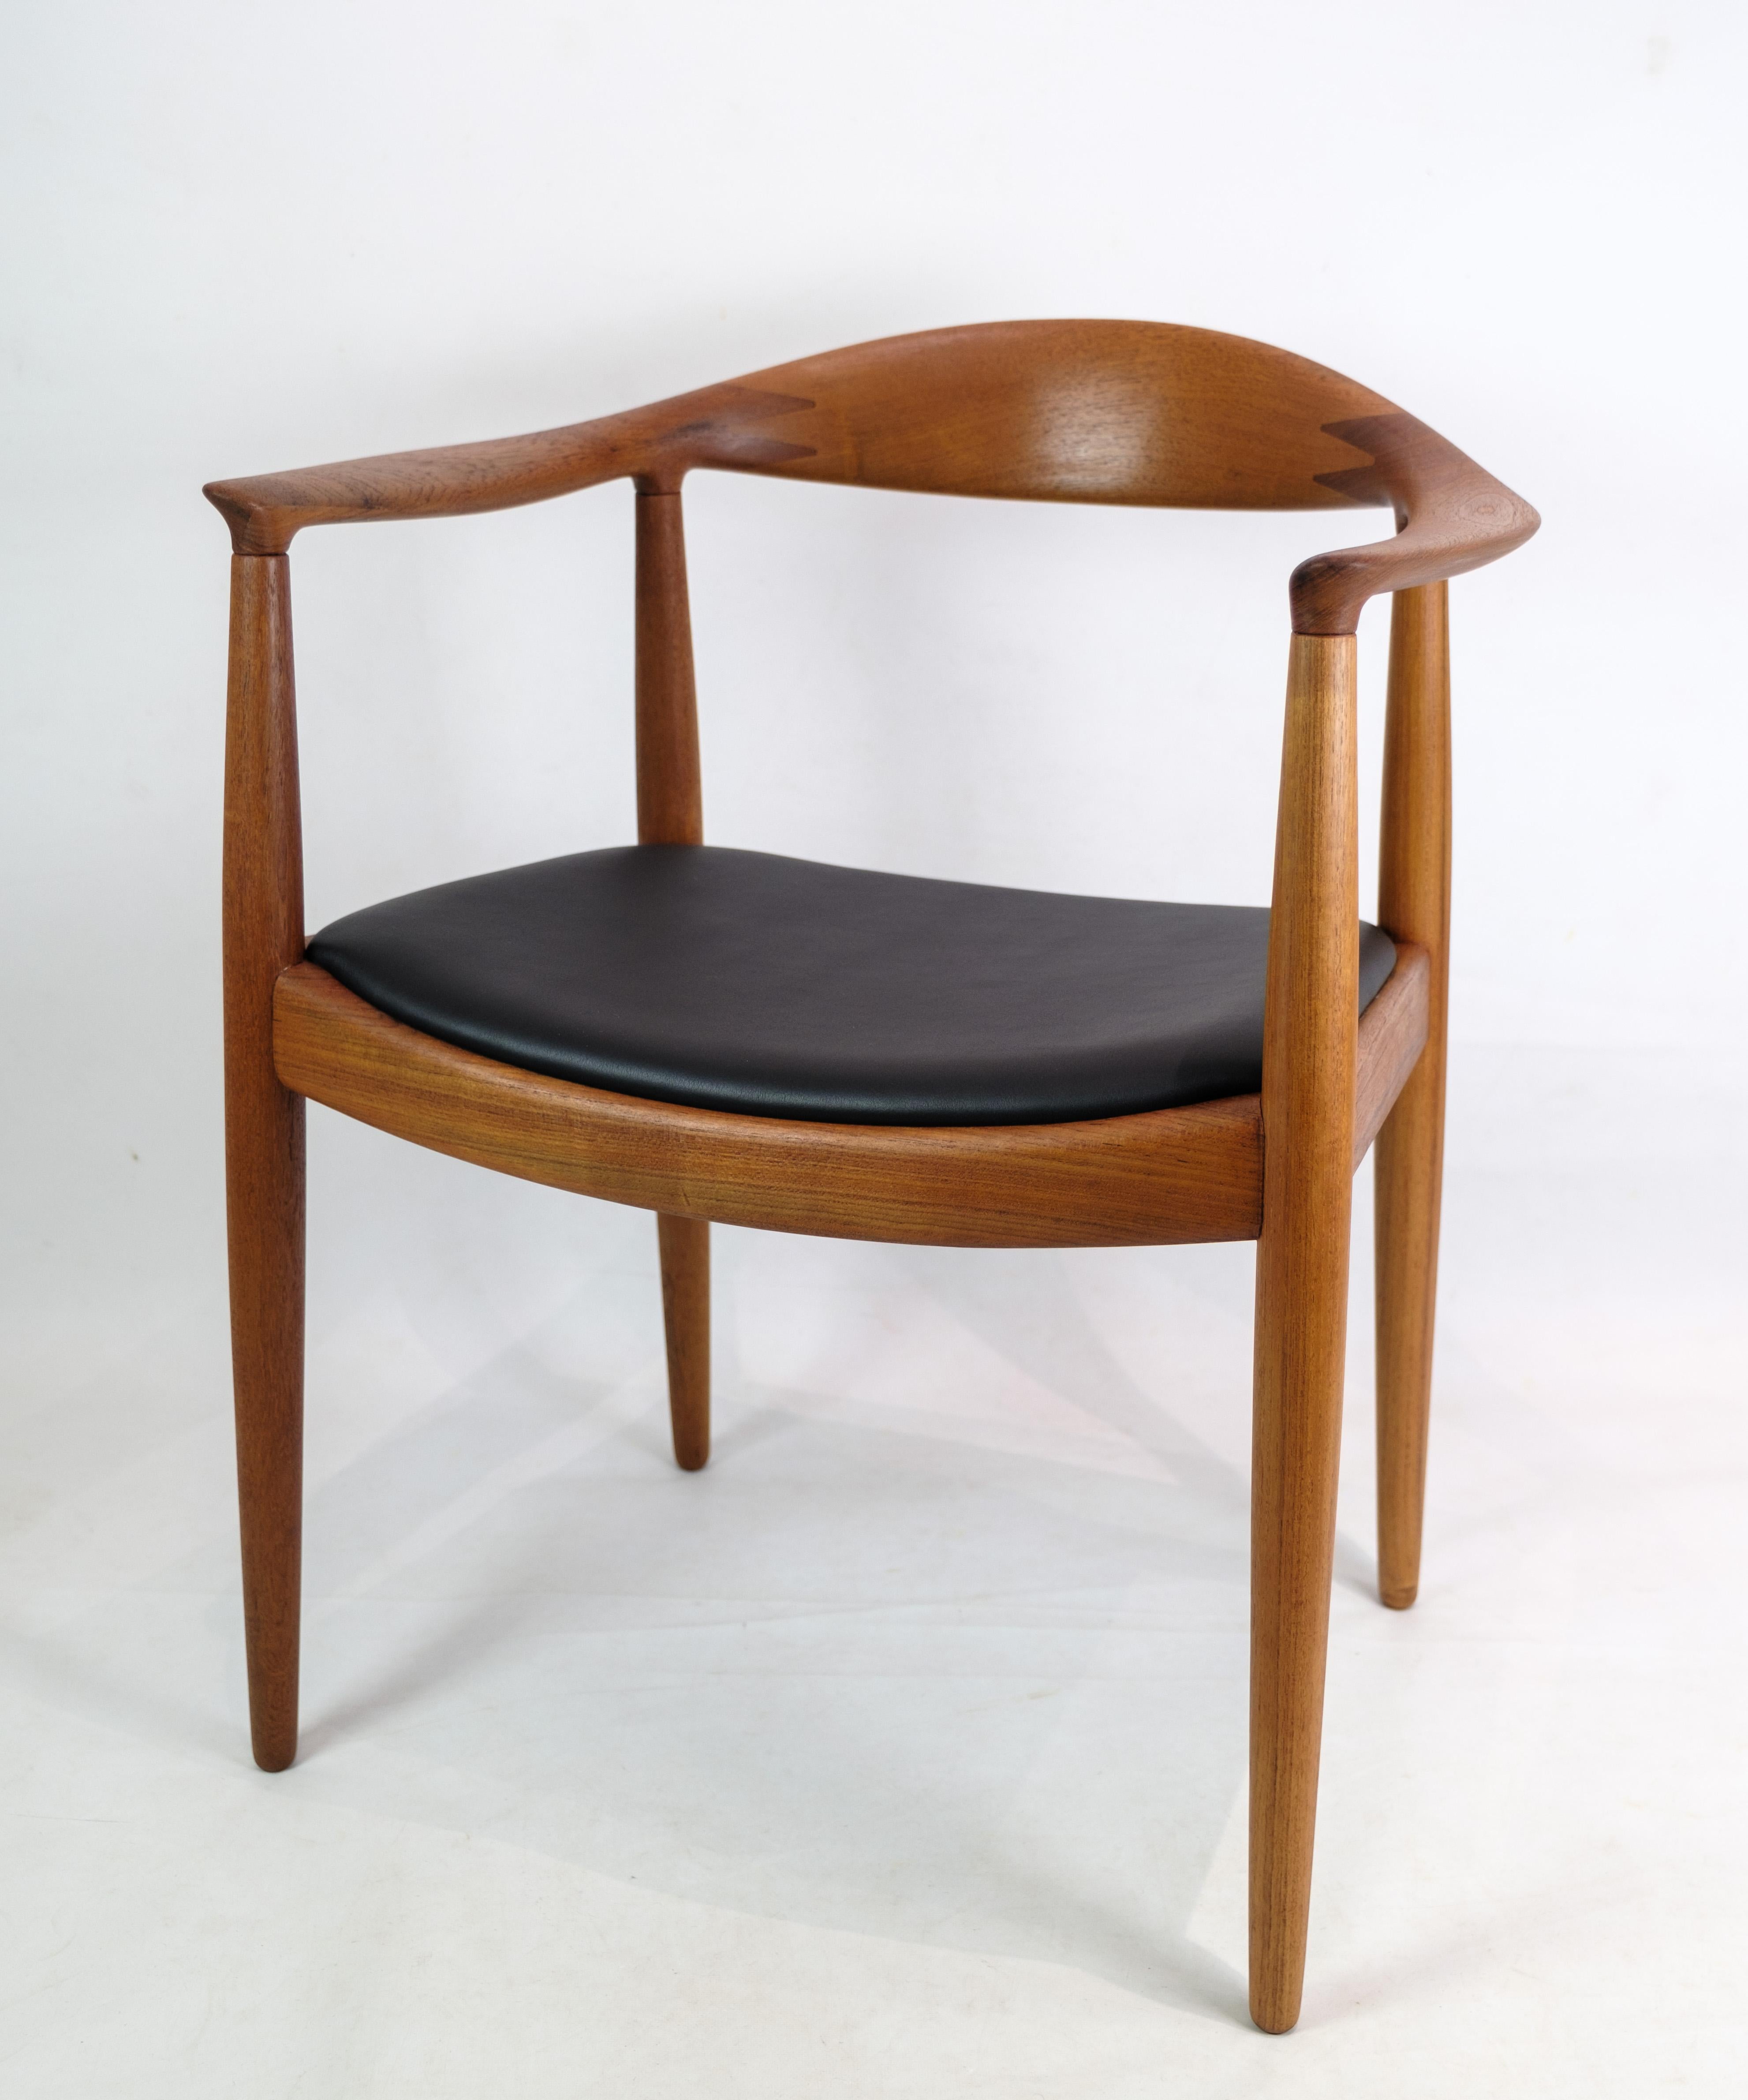 Dies ist ein Stuhl aus Teakholz und Leder, den Hans J. Wegner in den 1950er Jahren für Johannes Hansen entworfen hat. Das Modell JH 503 ist als 